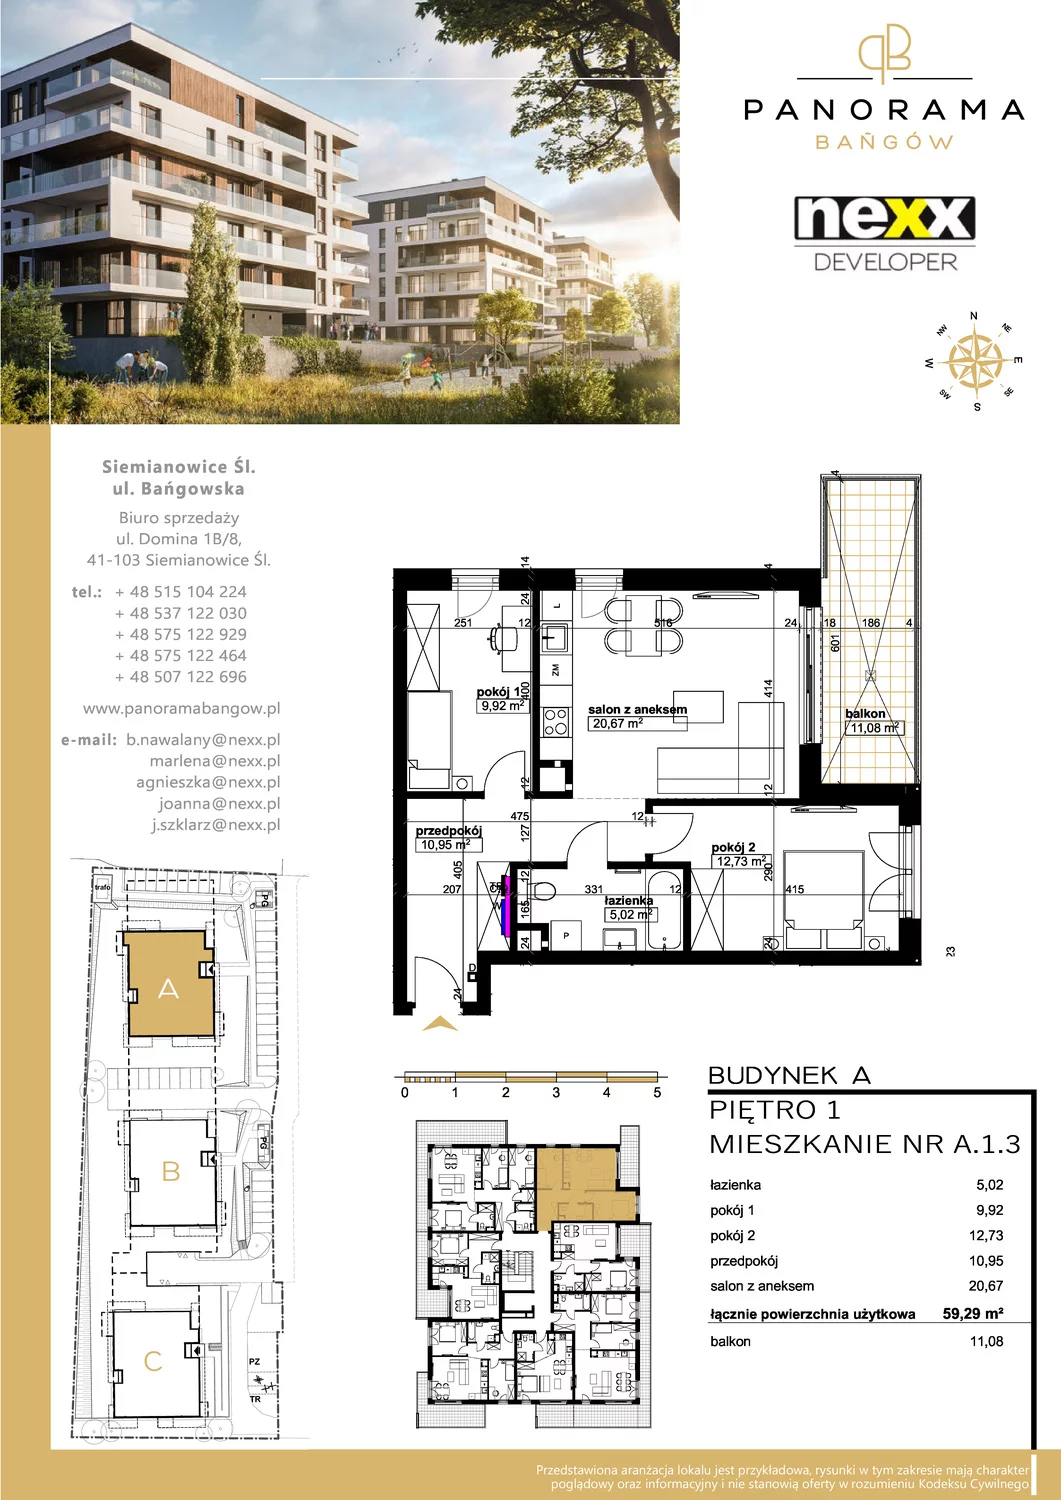 Mieszkanie 59,29 m², piętro 1, oferta nr A 1.3, Panorama Bańgów, Siemianowice Śląskie, Bańgów, ul. Bańgowska